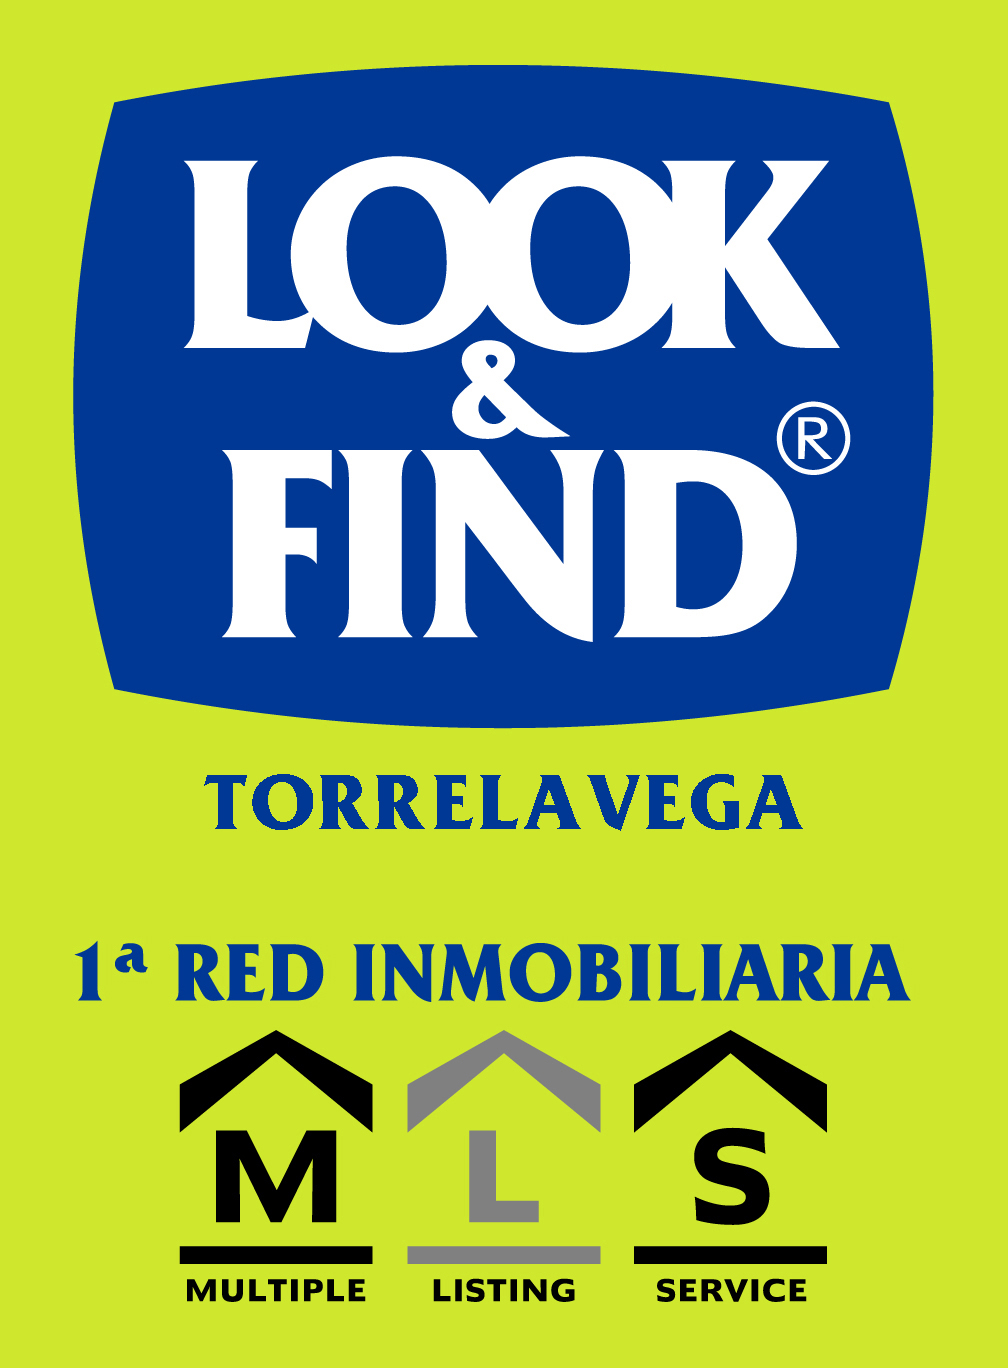 Inmobiliaria Look&Find Torrelavega